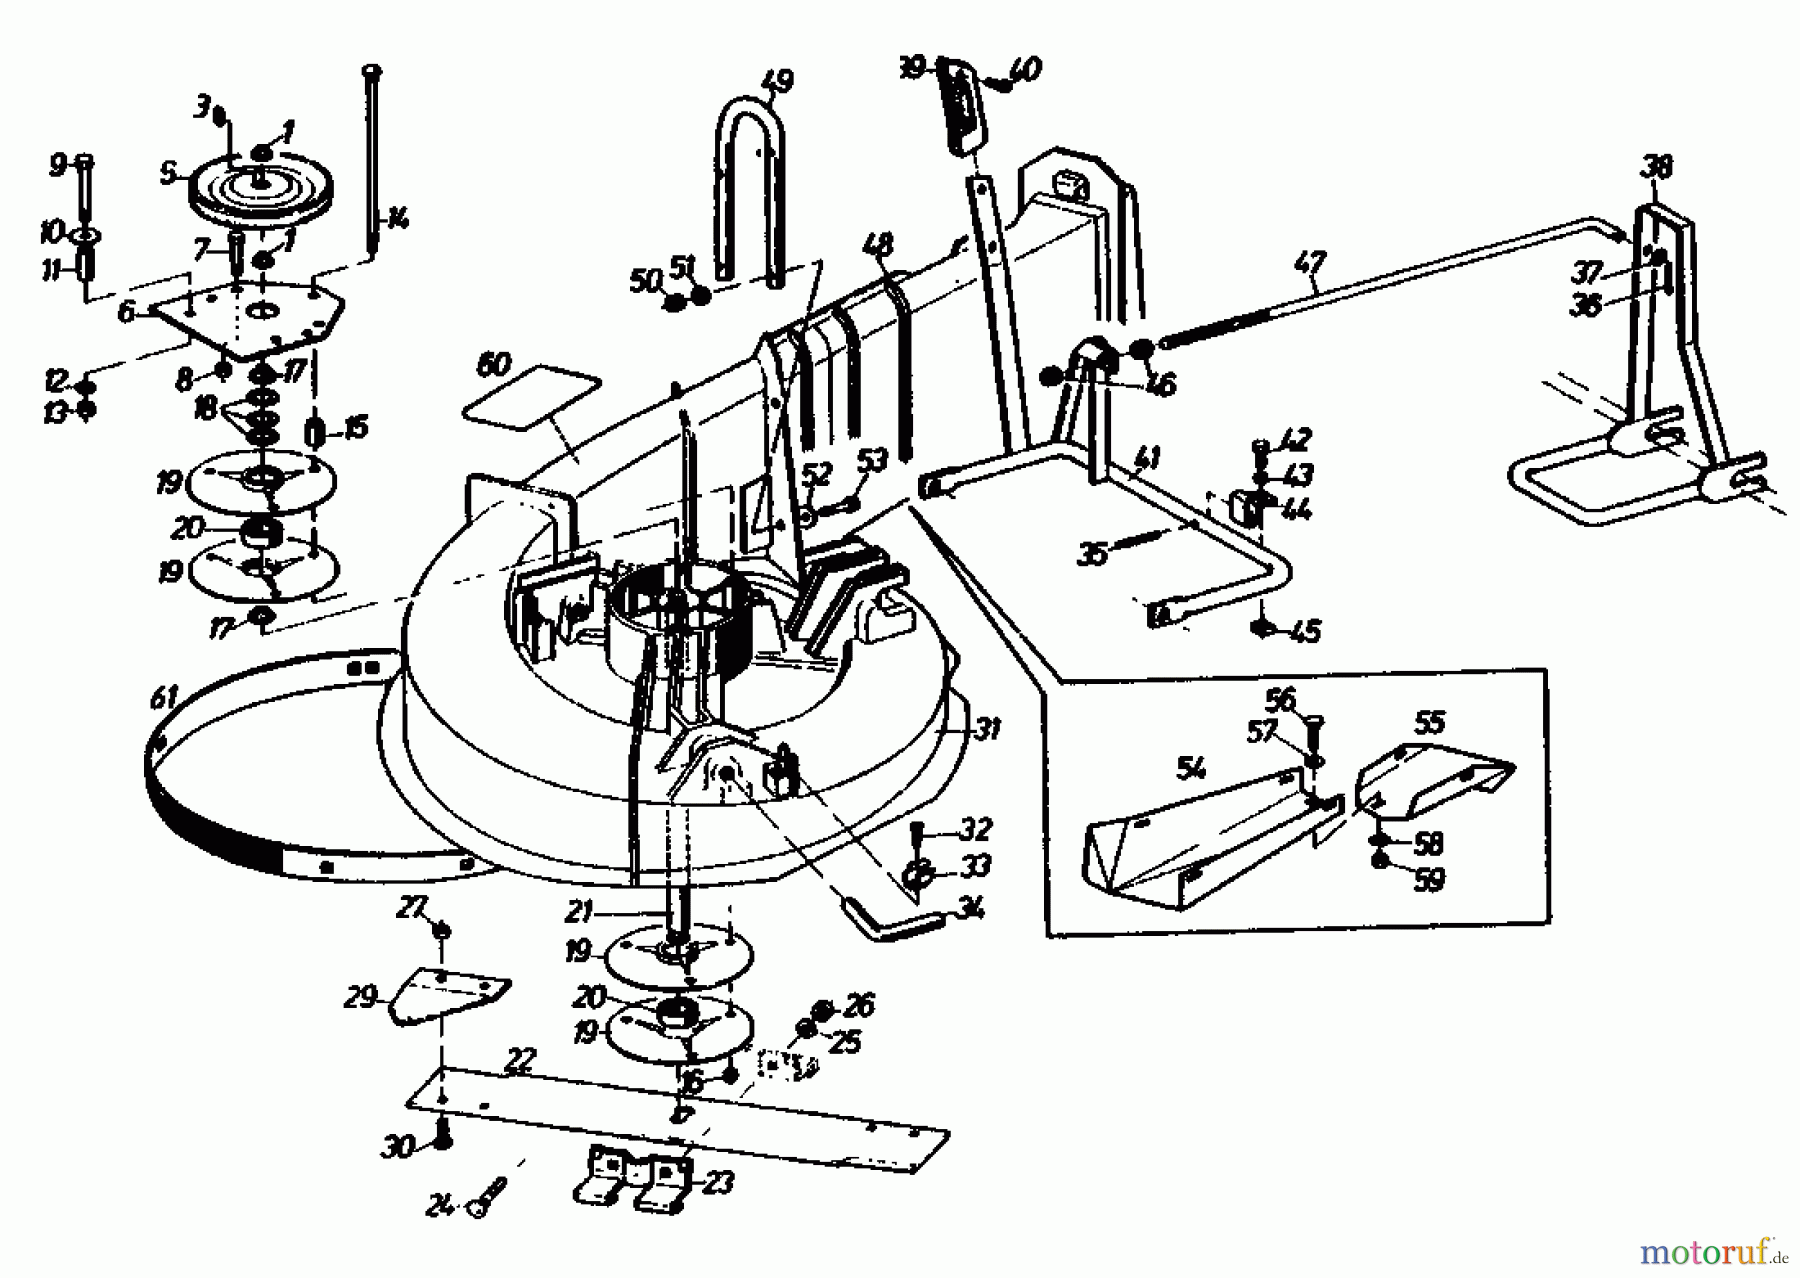  Gutbrod Rasentraktoren Sprint 1000 E 02840.04  (1991) Mähwerk 66cm